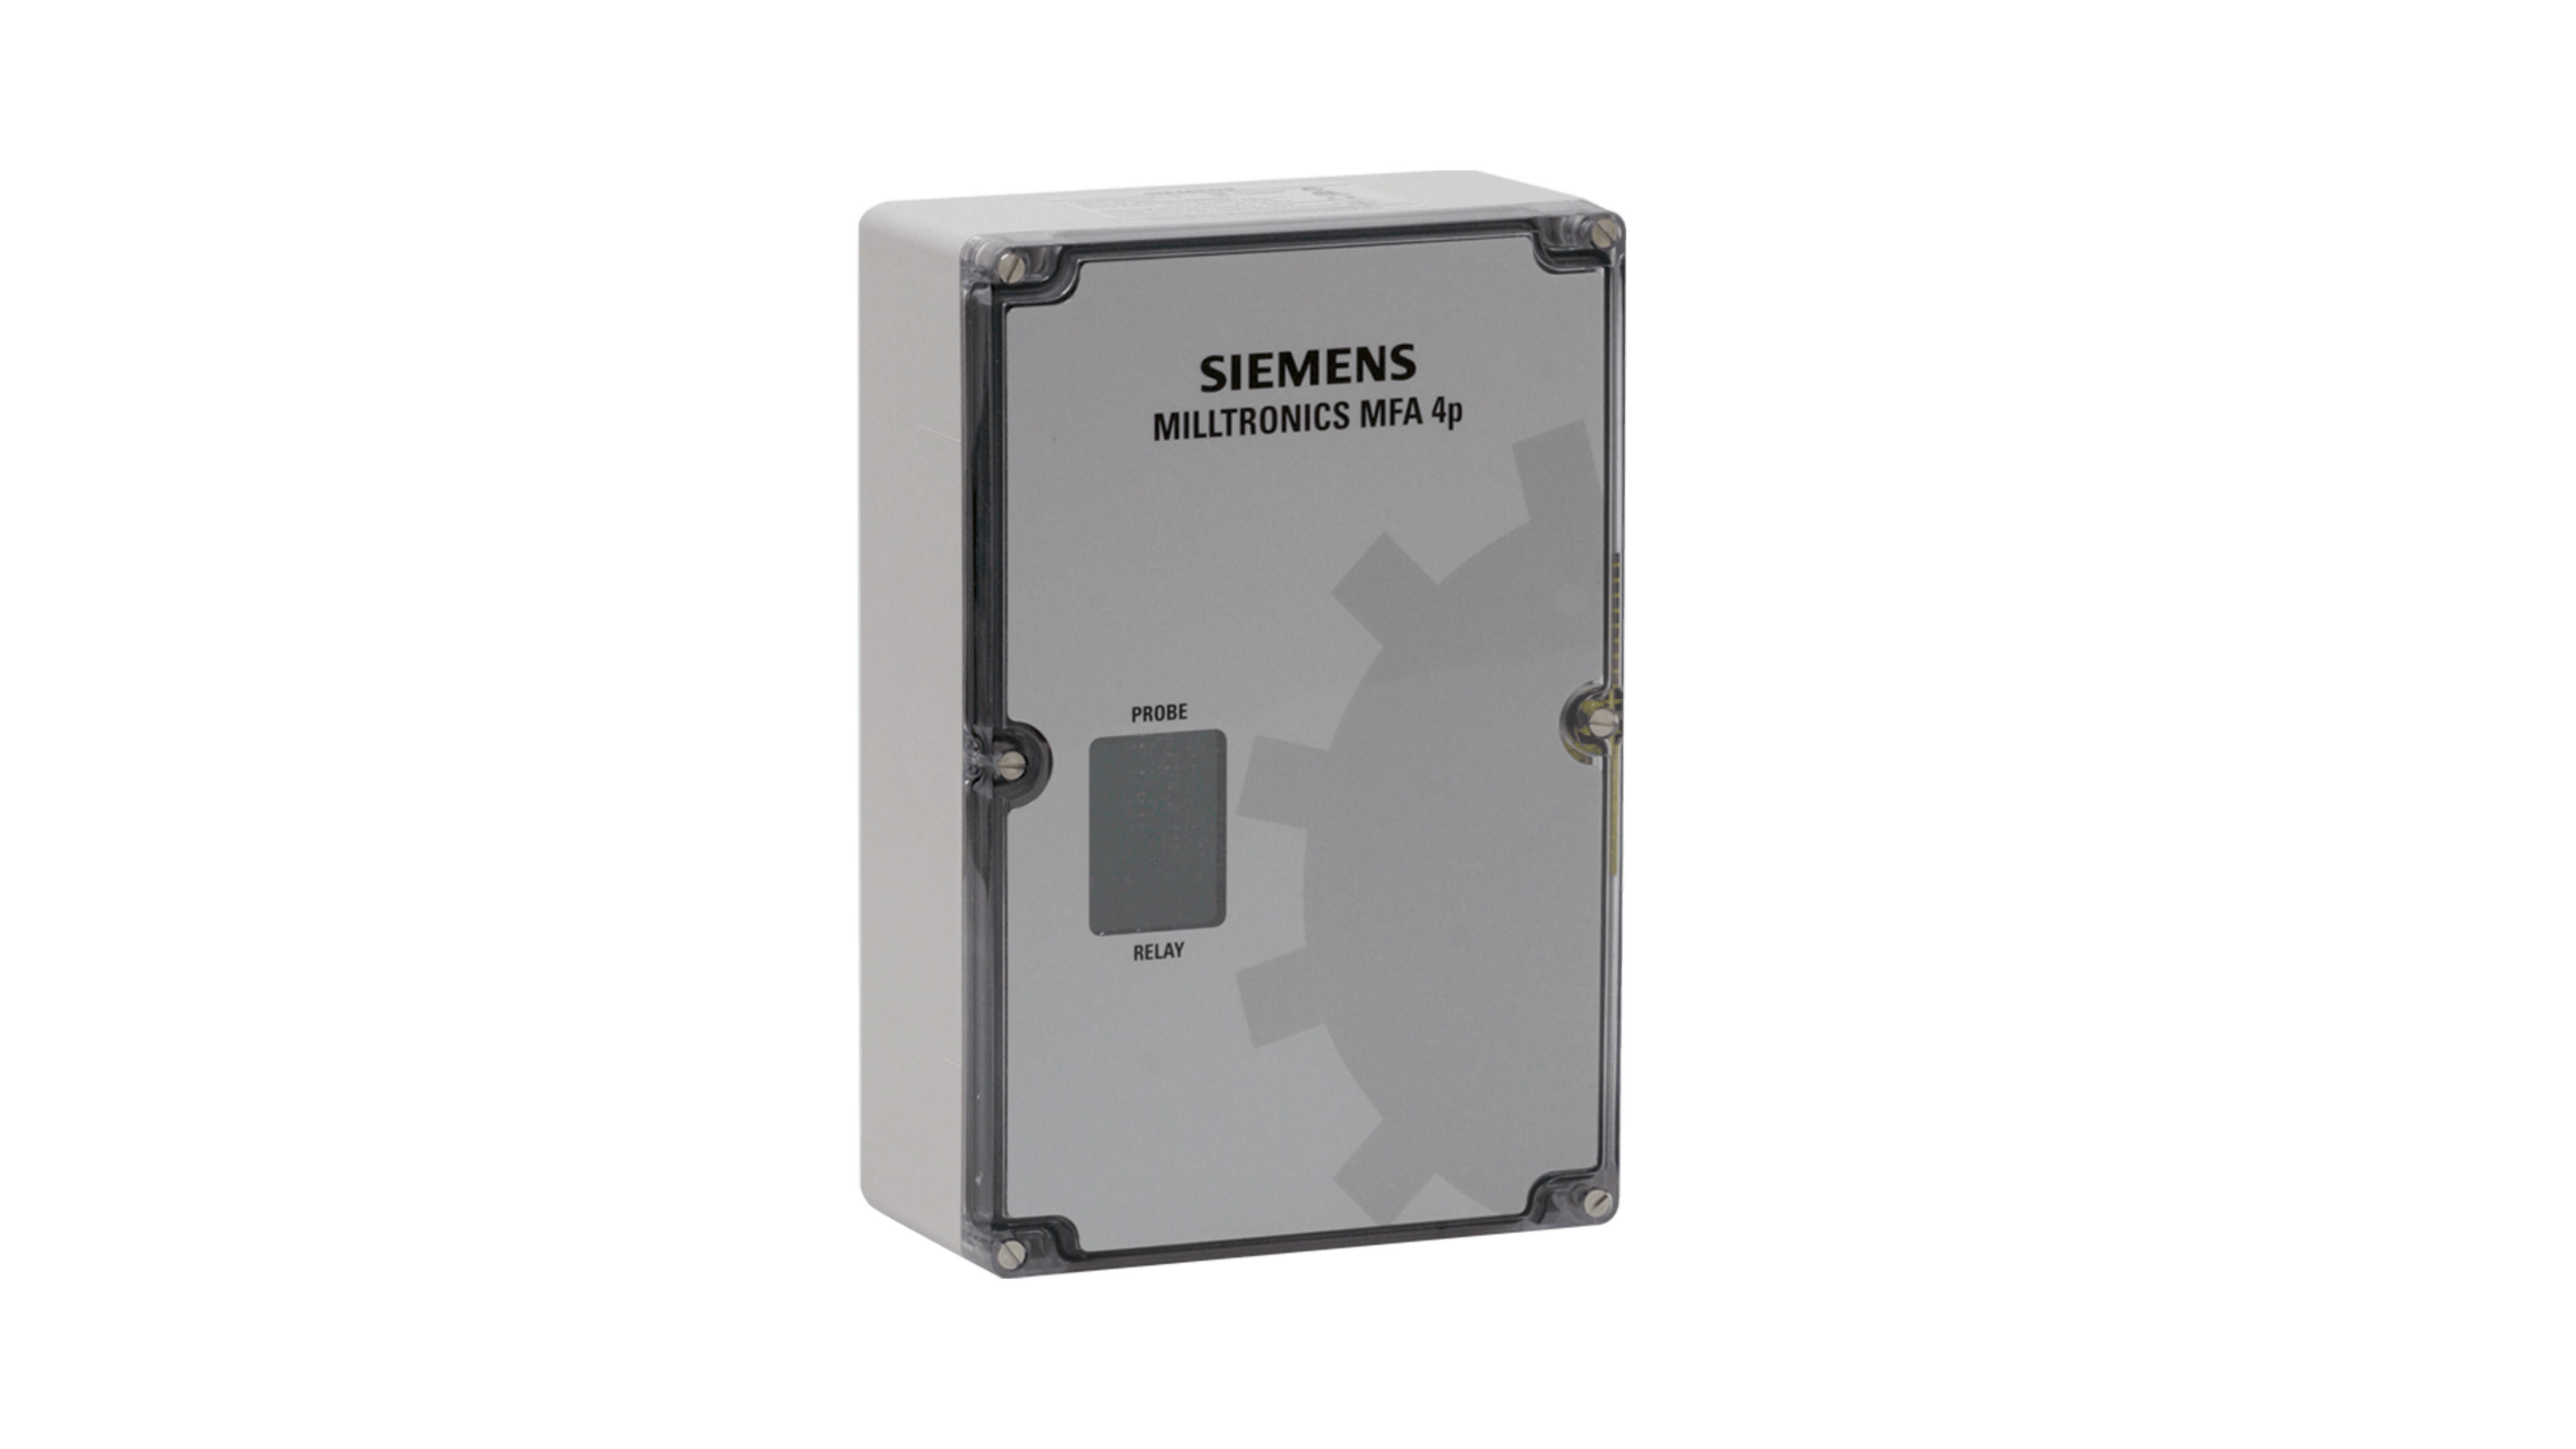 Milltronics MFA 4p - Siemens USA